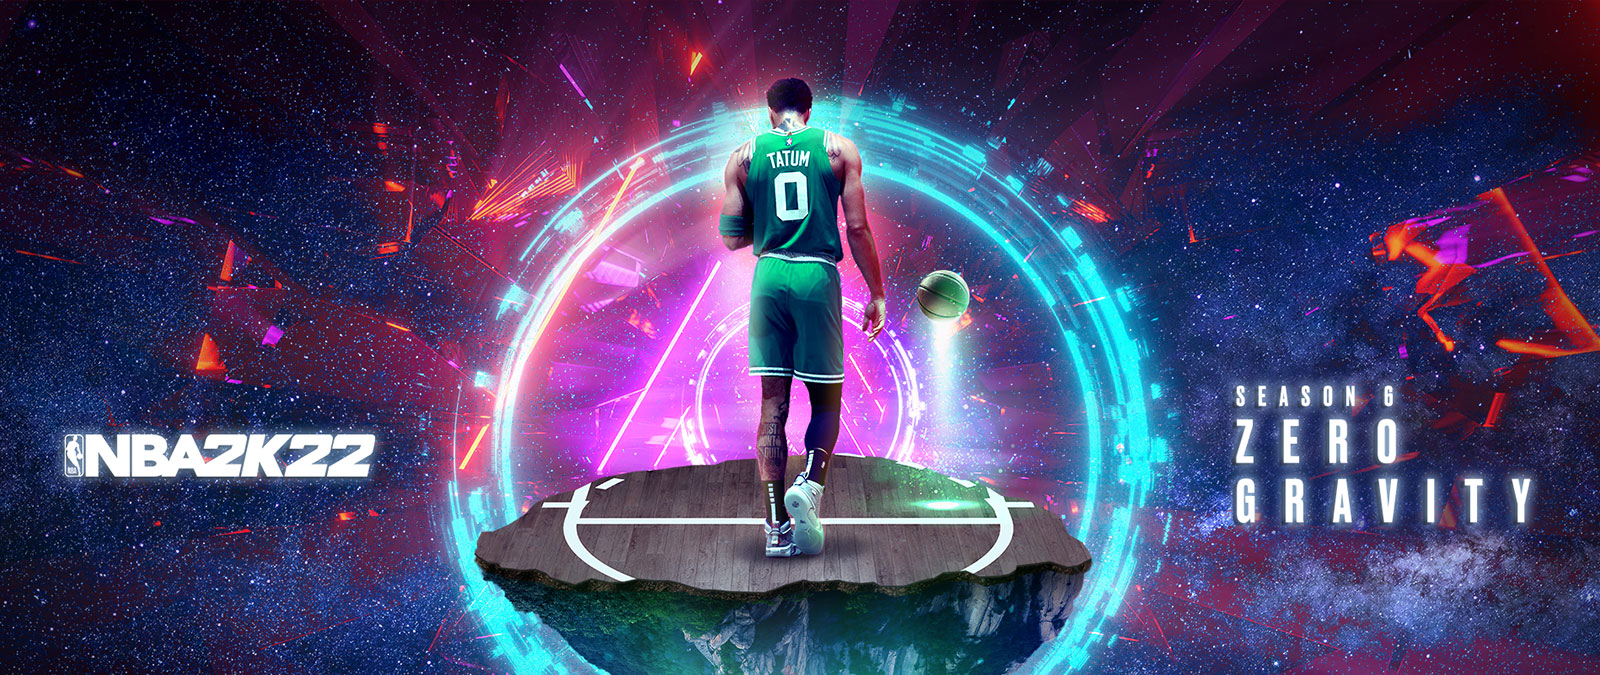 NBA 2K22, Season 6 Zero Gravity, Tatum steht auf einem schwebenden Teil eines Basketballplatzes im Weltraum, der von Energieringen umgeben ist.